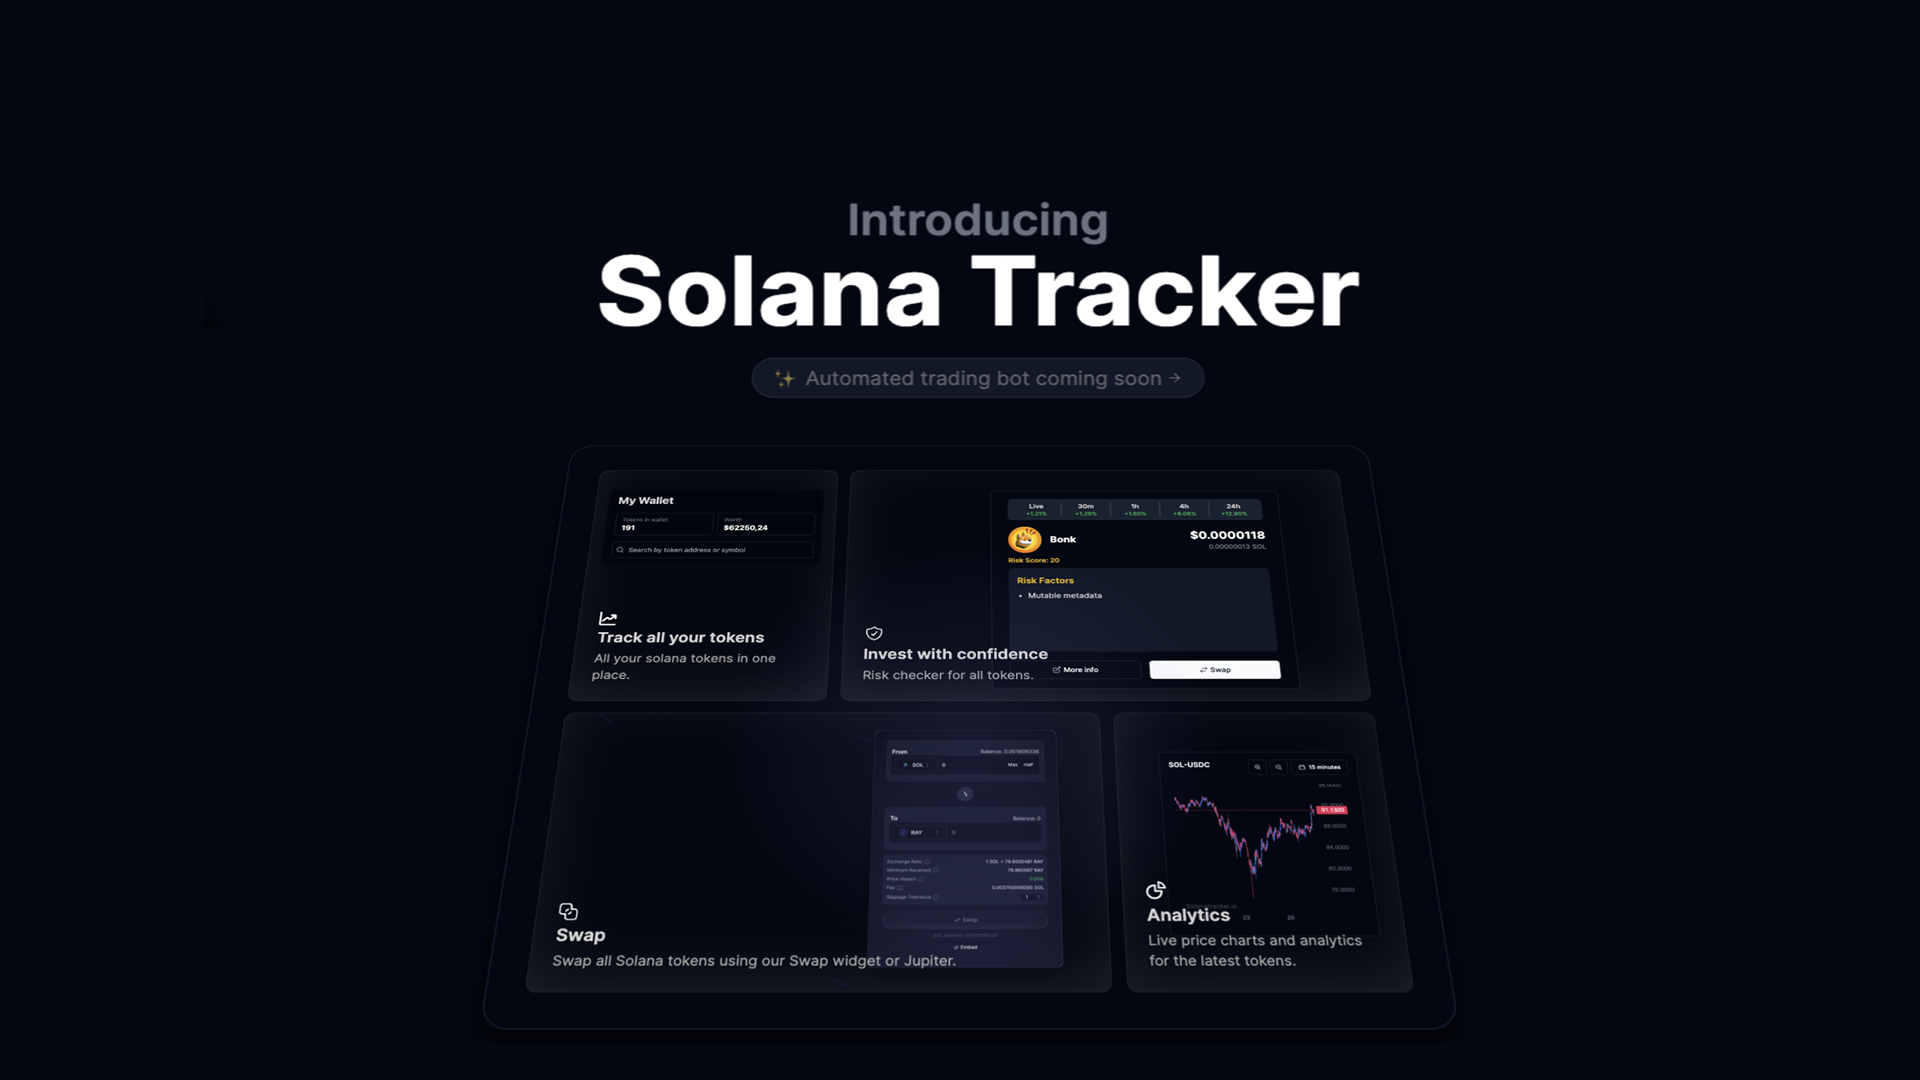 Solana Tracker main image